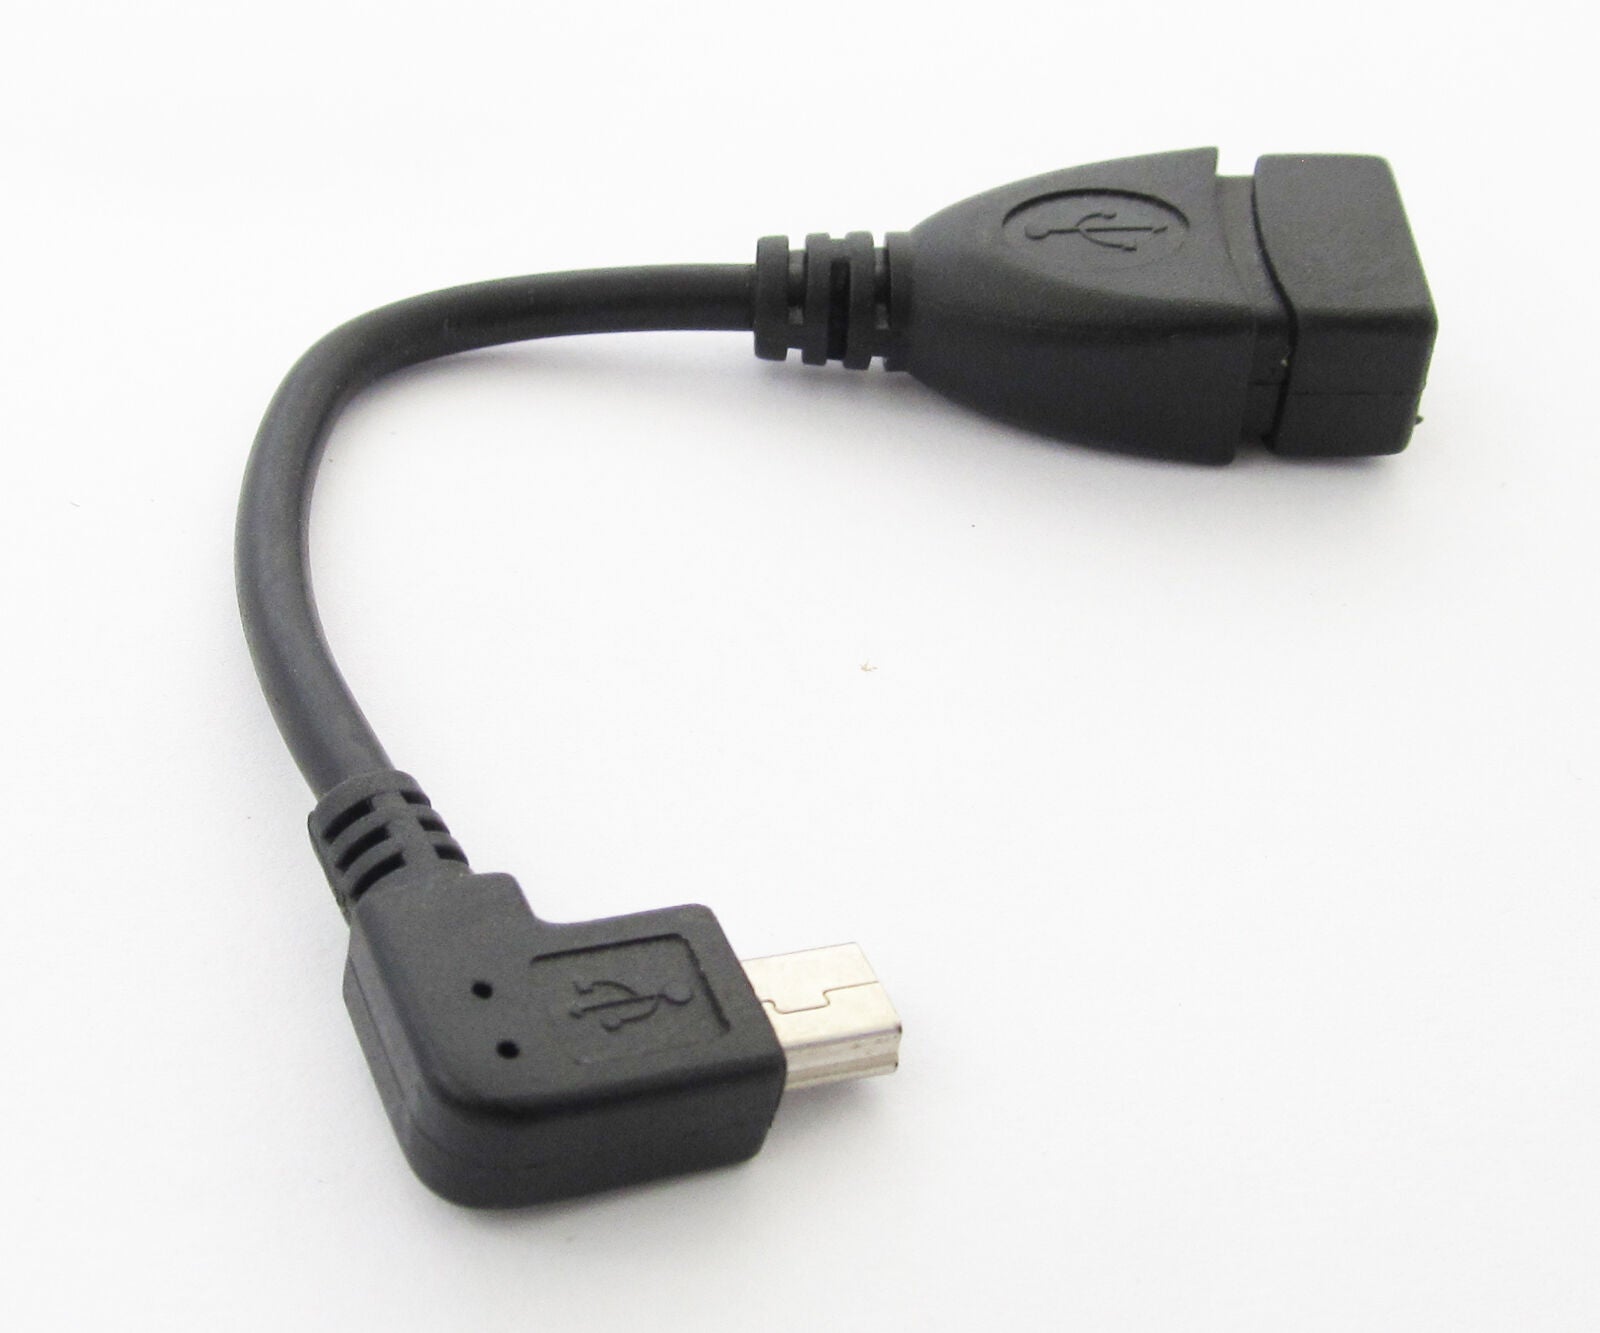 50pcs Mini Right Angle 5pin Male Plug To USB 2.O Female Mini OTG Cable Connector